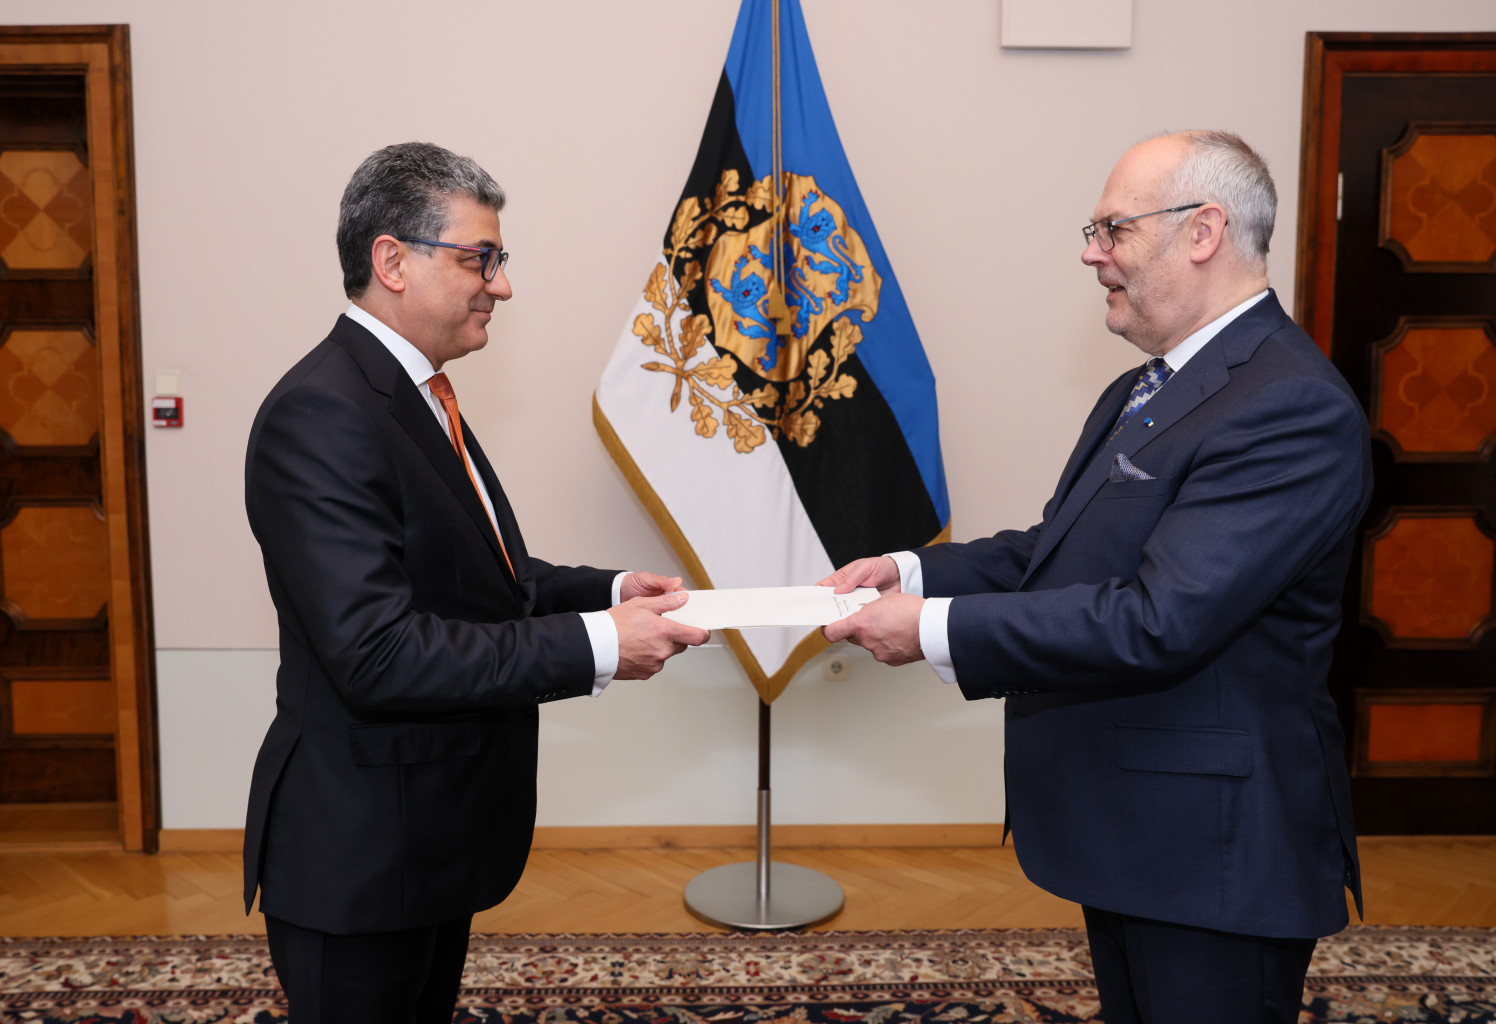 Embajador de Colombia Assad Jater presenta sus cartas credenciales ante el Jefe de Estado de Estonia 